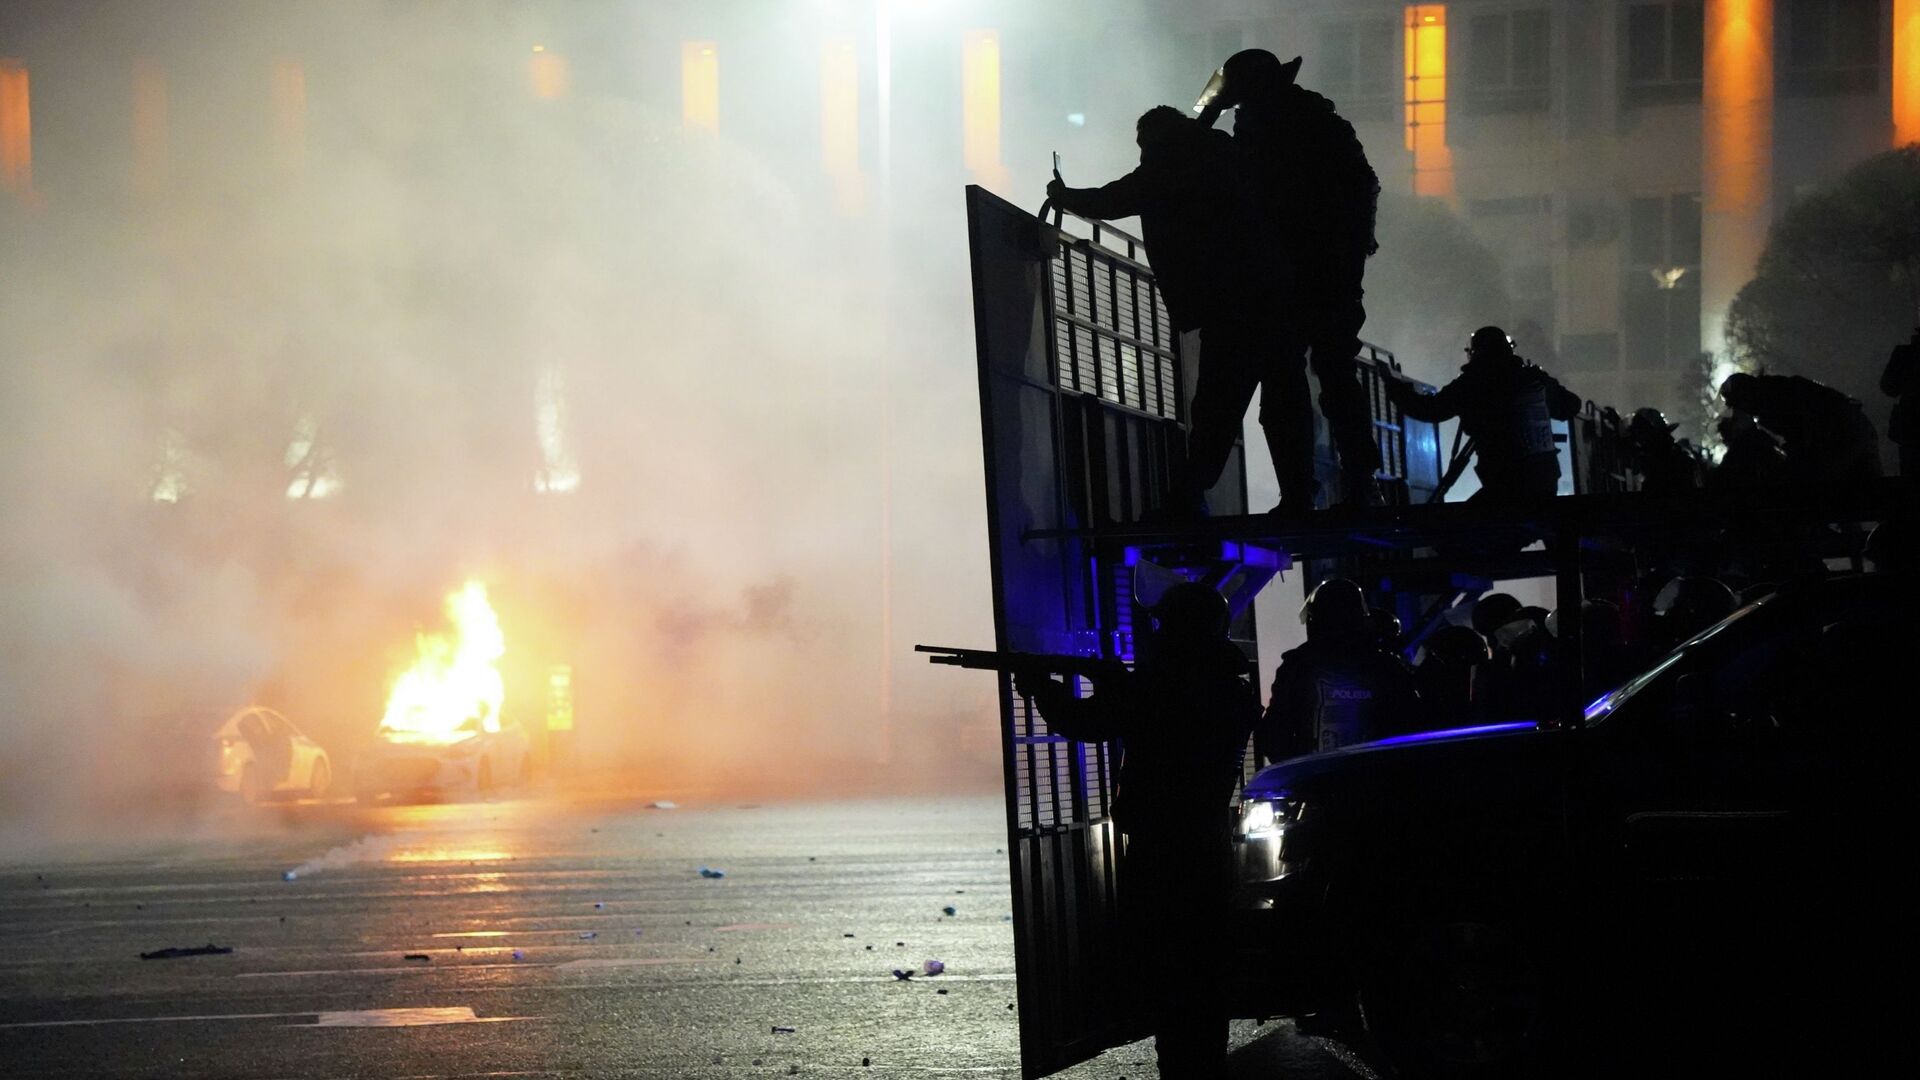 Полицейская машина горит, когда ОМОН готовится остановить демонстрантов в центре Алматы, Казахстан, среда, 5 января 2022 г.  - Sputnik Қазақстан, 1920, 05.06.2022